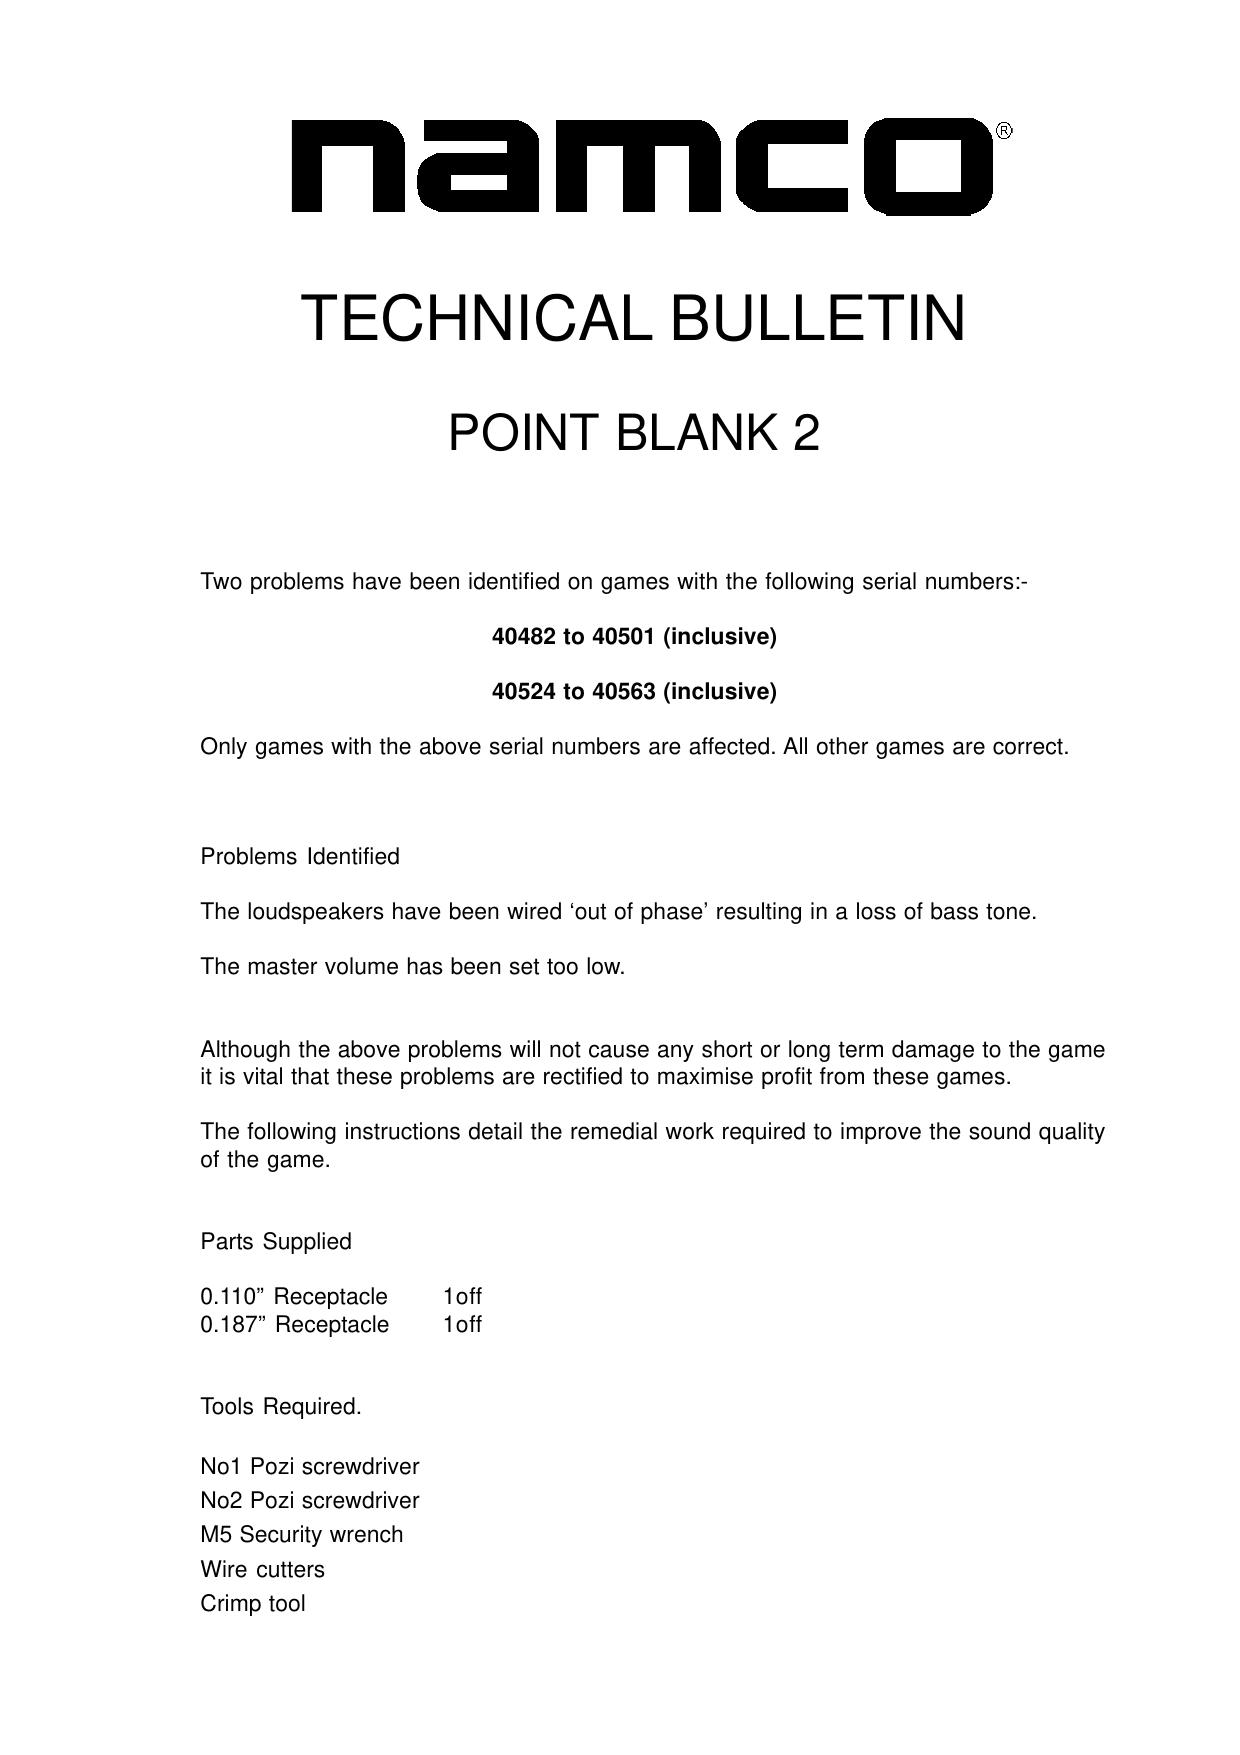 Point Blank2 Update 1